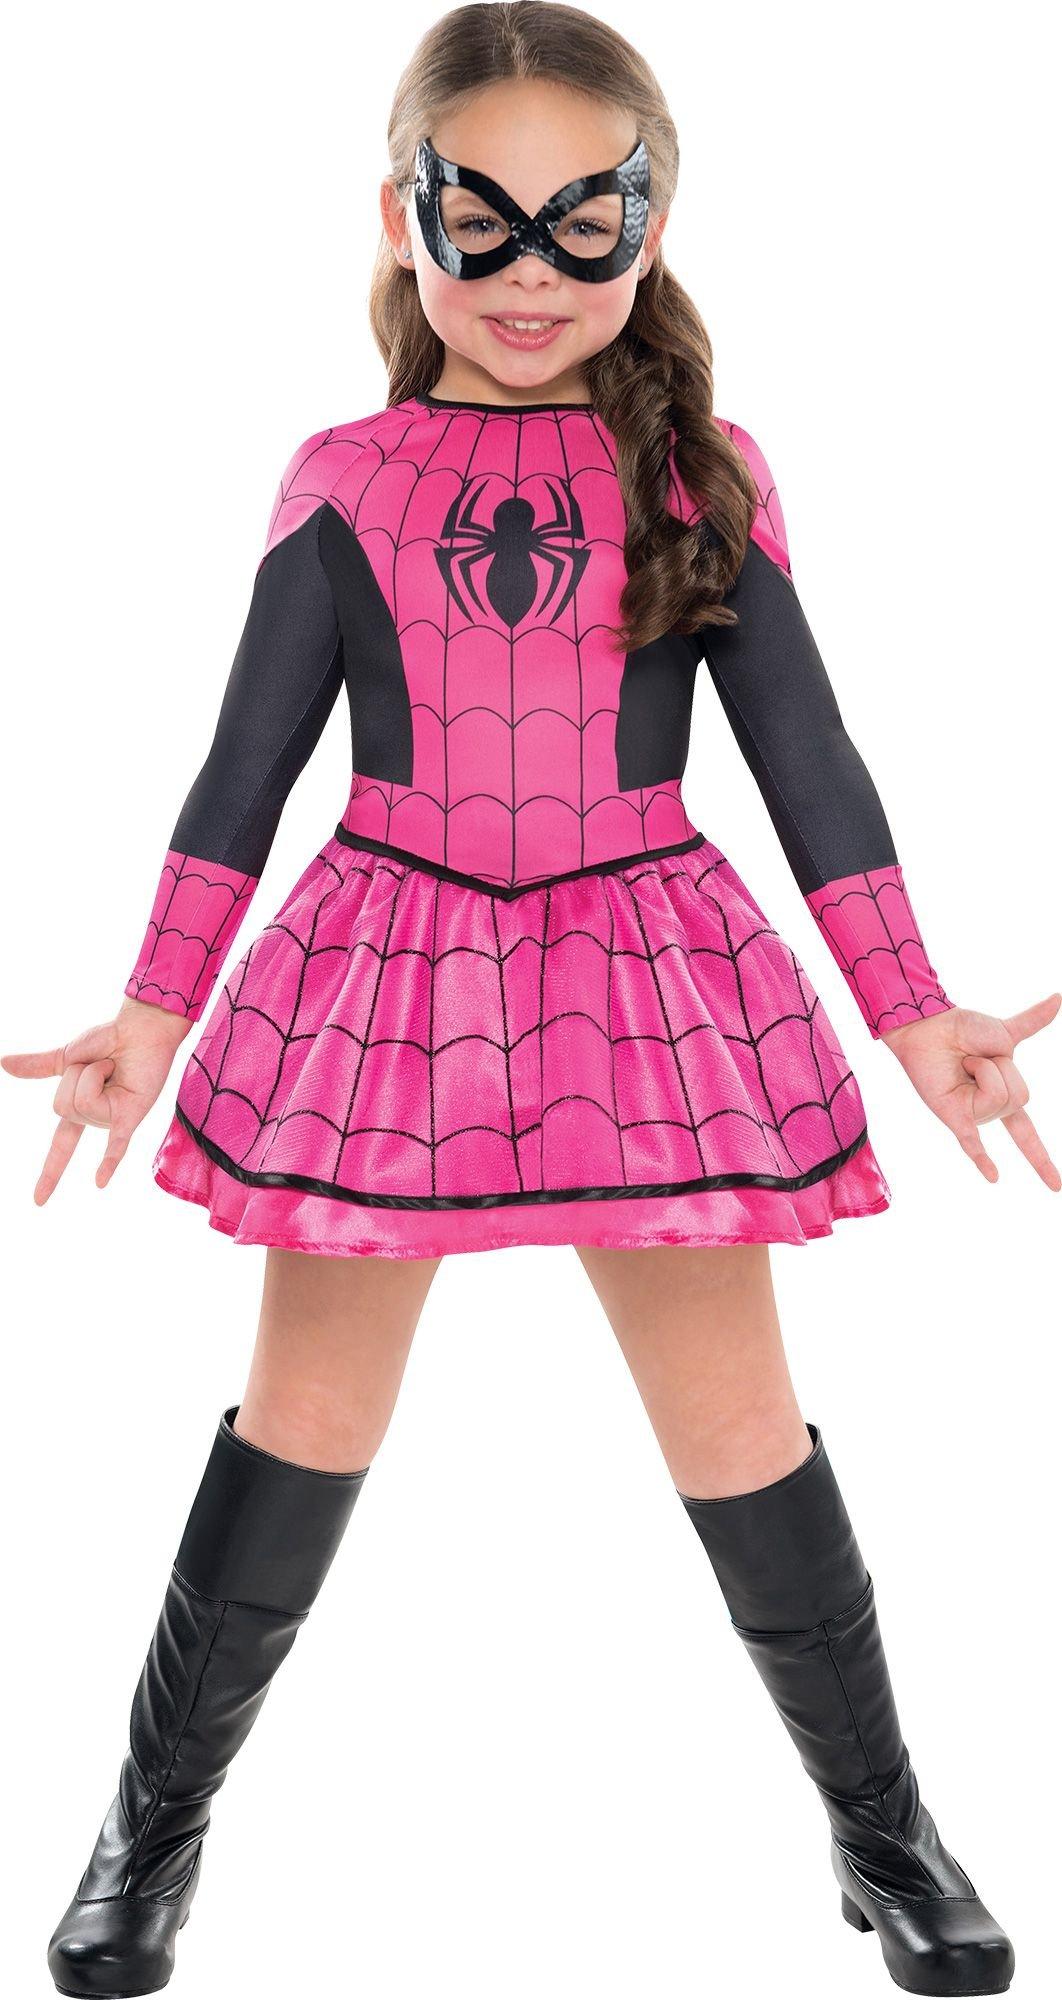 girl superhero costumes